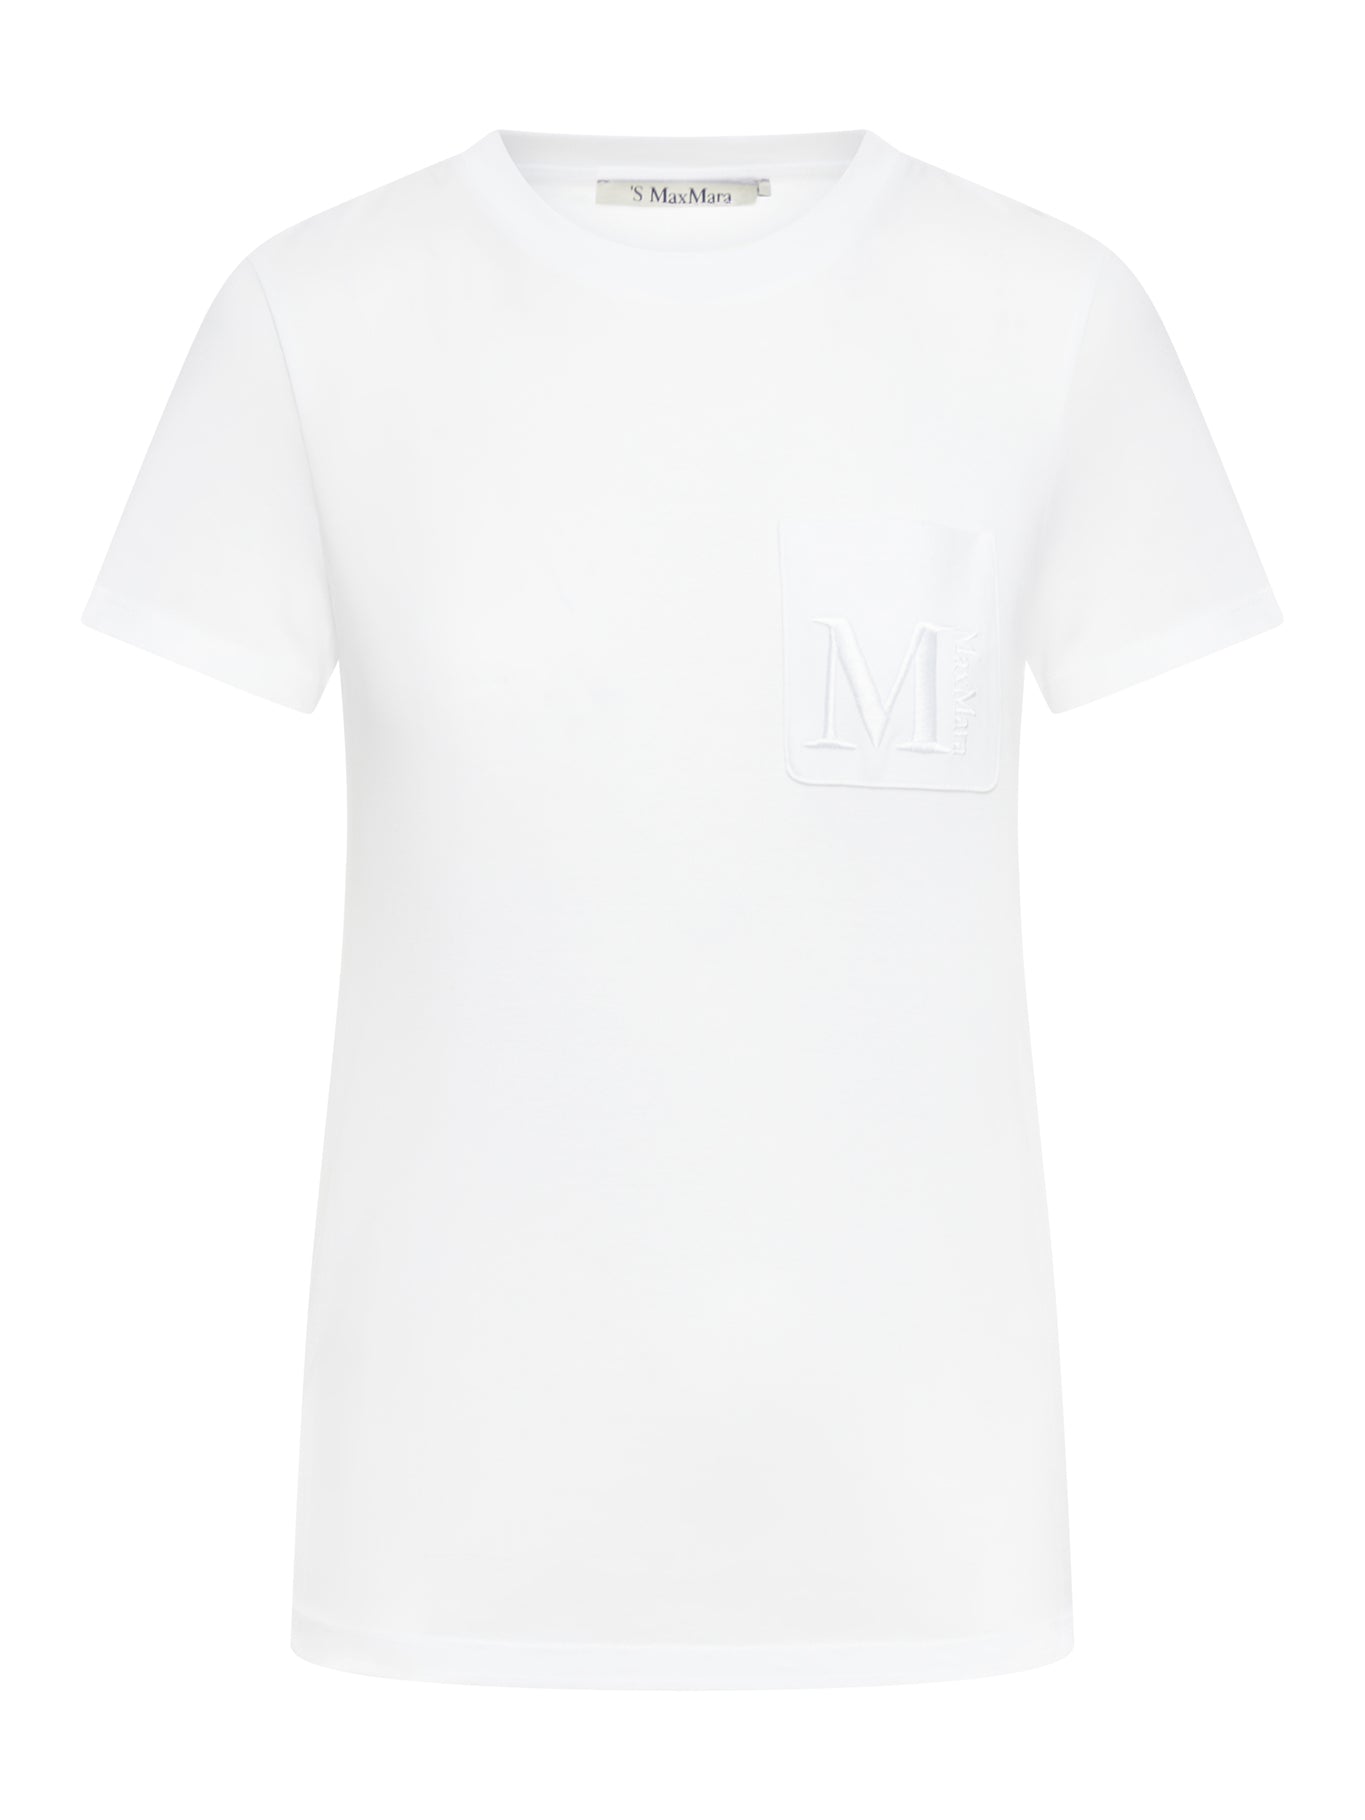 Madeira cotton t-shirt